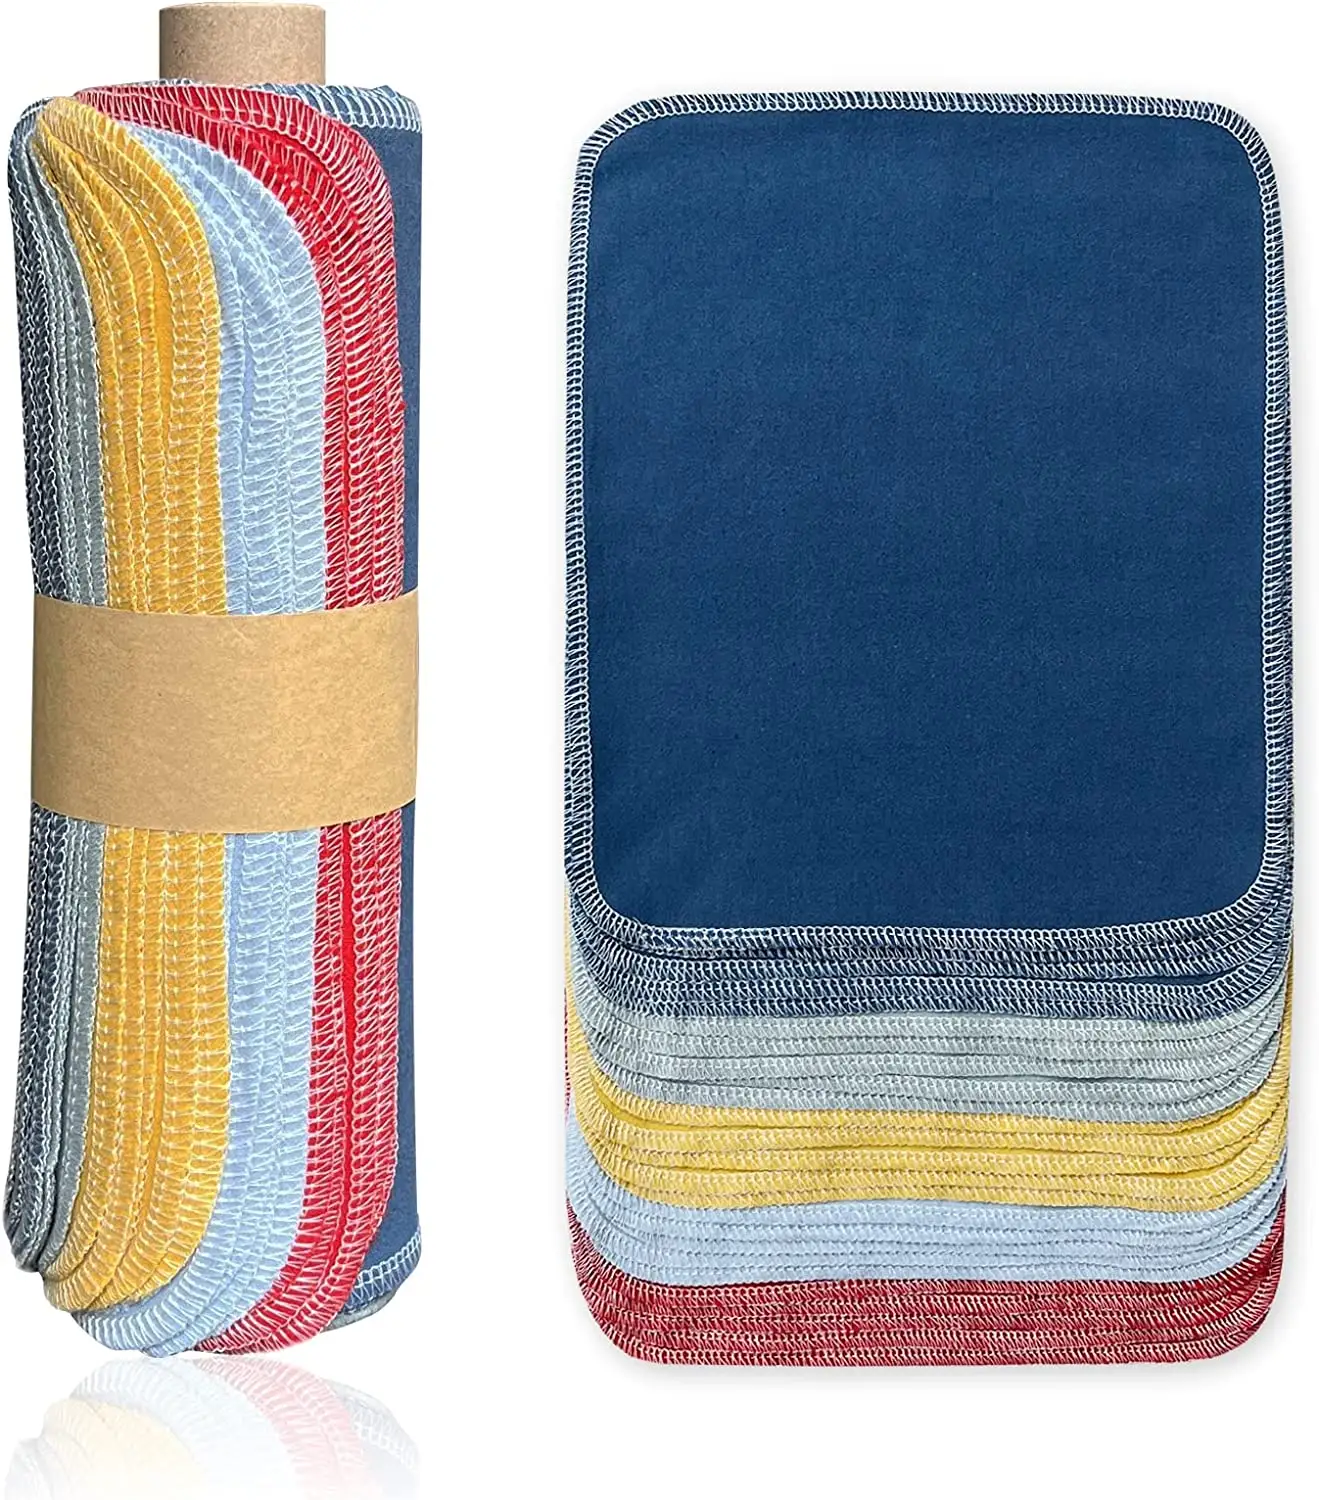 12 पैक यादृच्छिक ठोस रंग शोषक रसोई घर की सफाई तेजी से सूखने शून्य अपशिष्ट पुन: प्रयोज्य कागज तौलिया नैपकिन कपड़ा धो सकते हैं